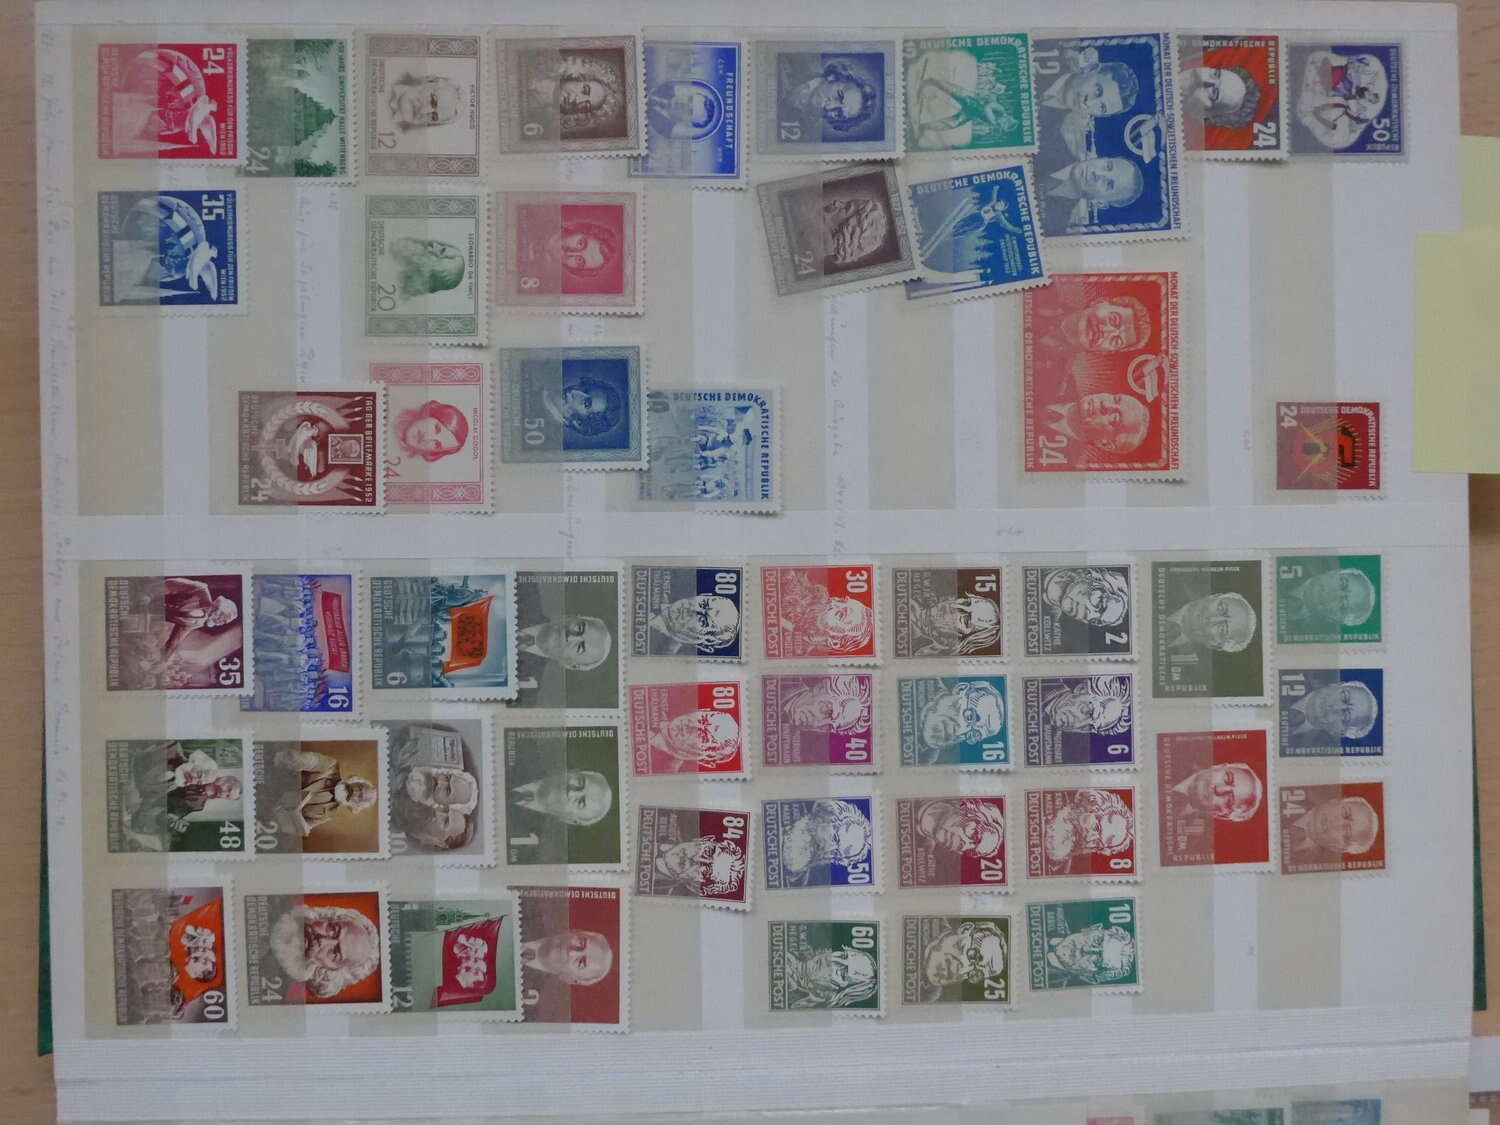 Lot 12 - sammlungen und posten sammlernachlässe -  Deutsche Briefmarken AG 6th Large Lot Auction Deutsche Briefmarken AG